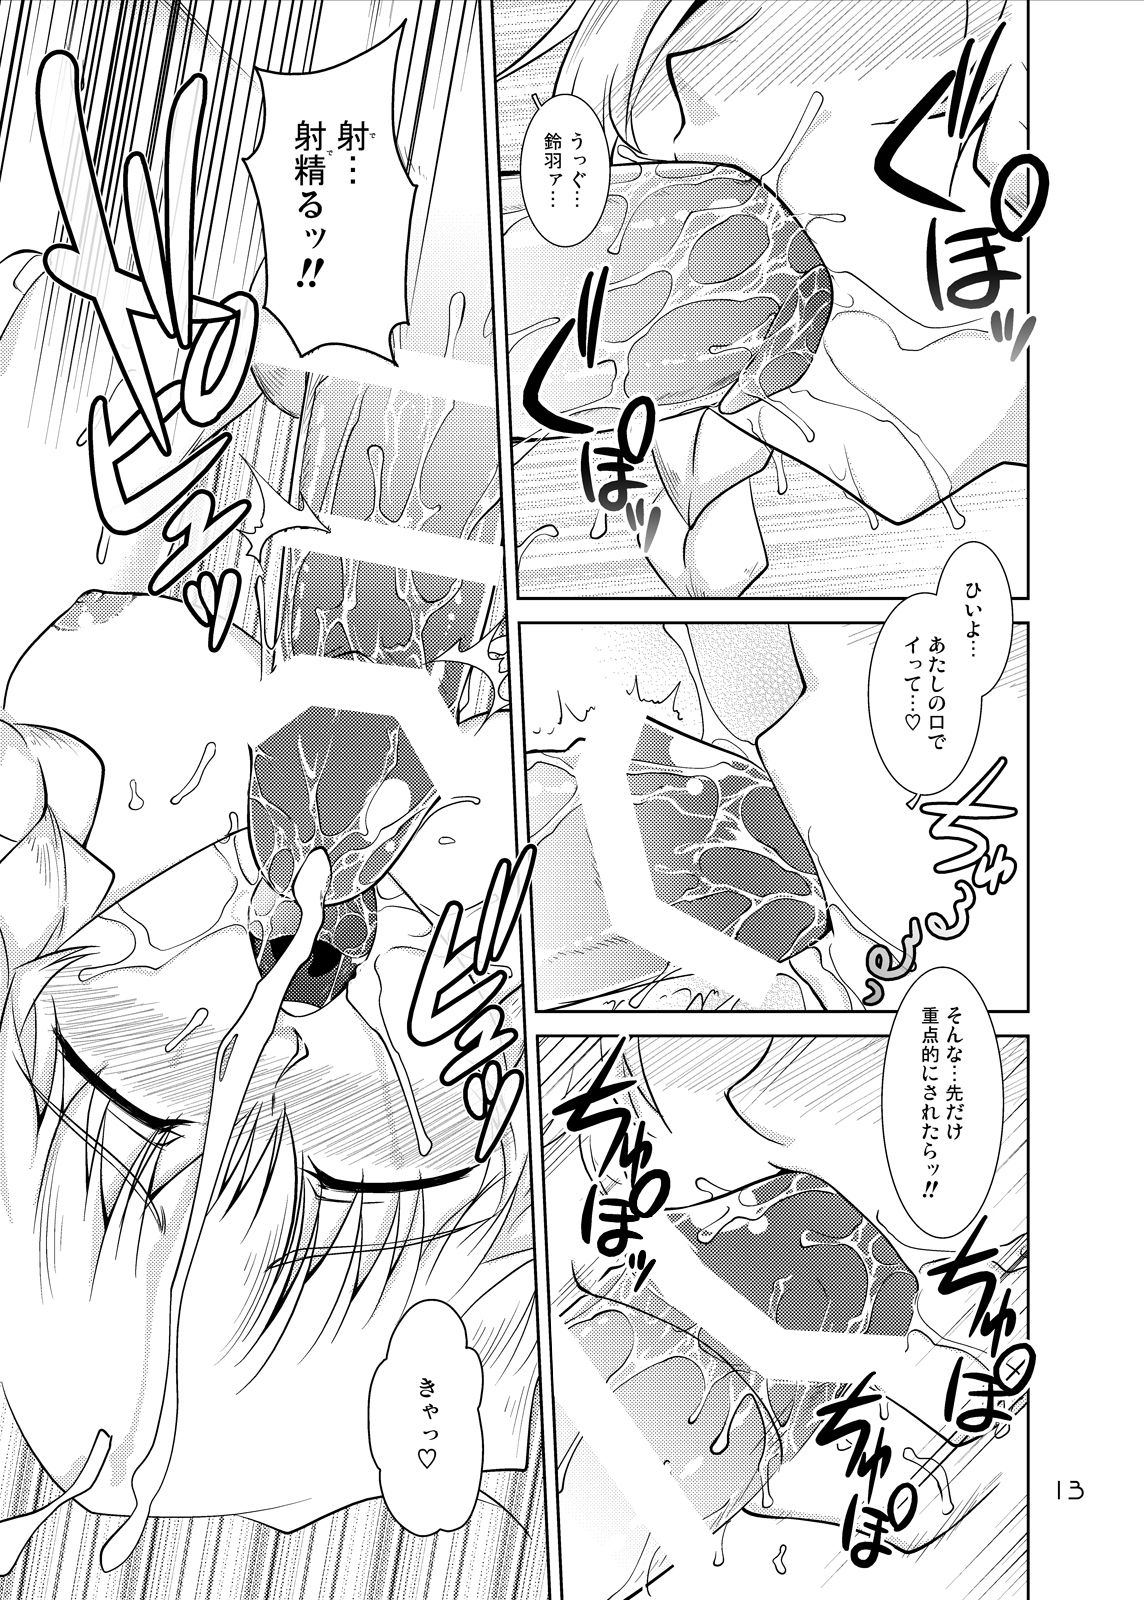 [GENOCIDE (Hattori Gorou)] Spats;Gate PART 6 Jisseki Kaijo no Fatality (Steins;Gate) [Digital] 11